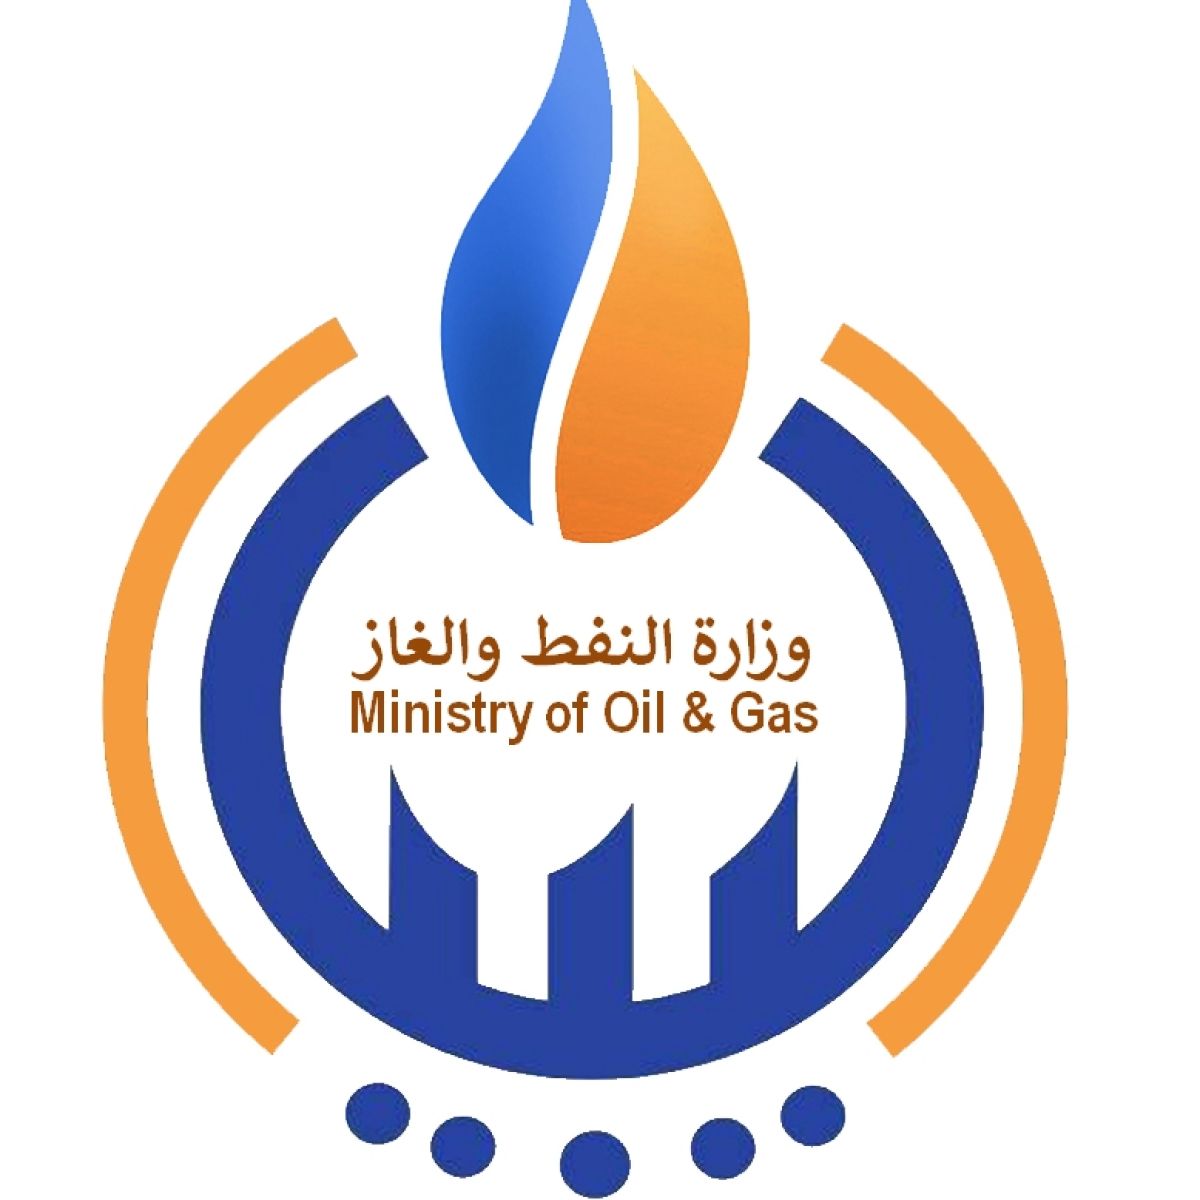 وزارة النفط والغاز ترحب بإعلان المؤسسة الوطنية للنفط رفع القوة القاهرة واستئناف الإنتاج والتصدير